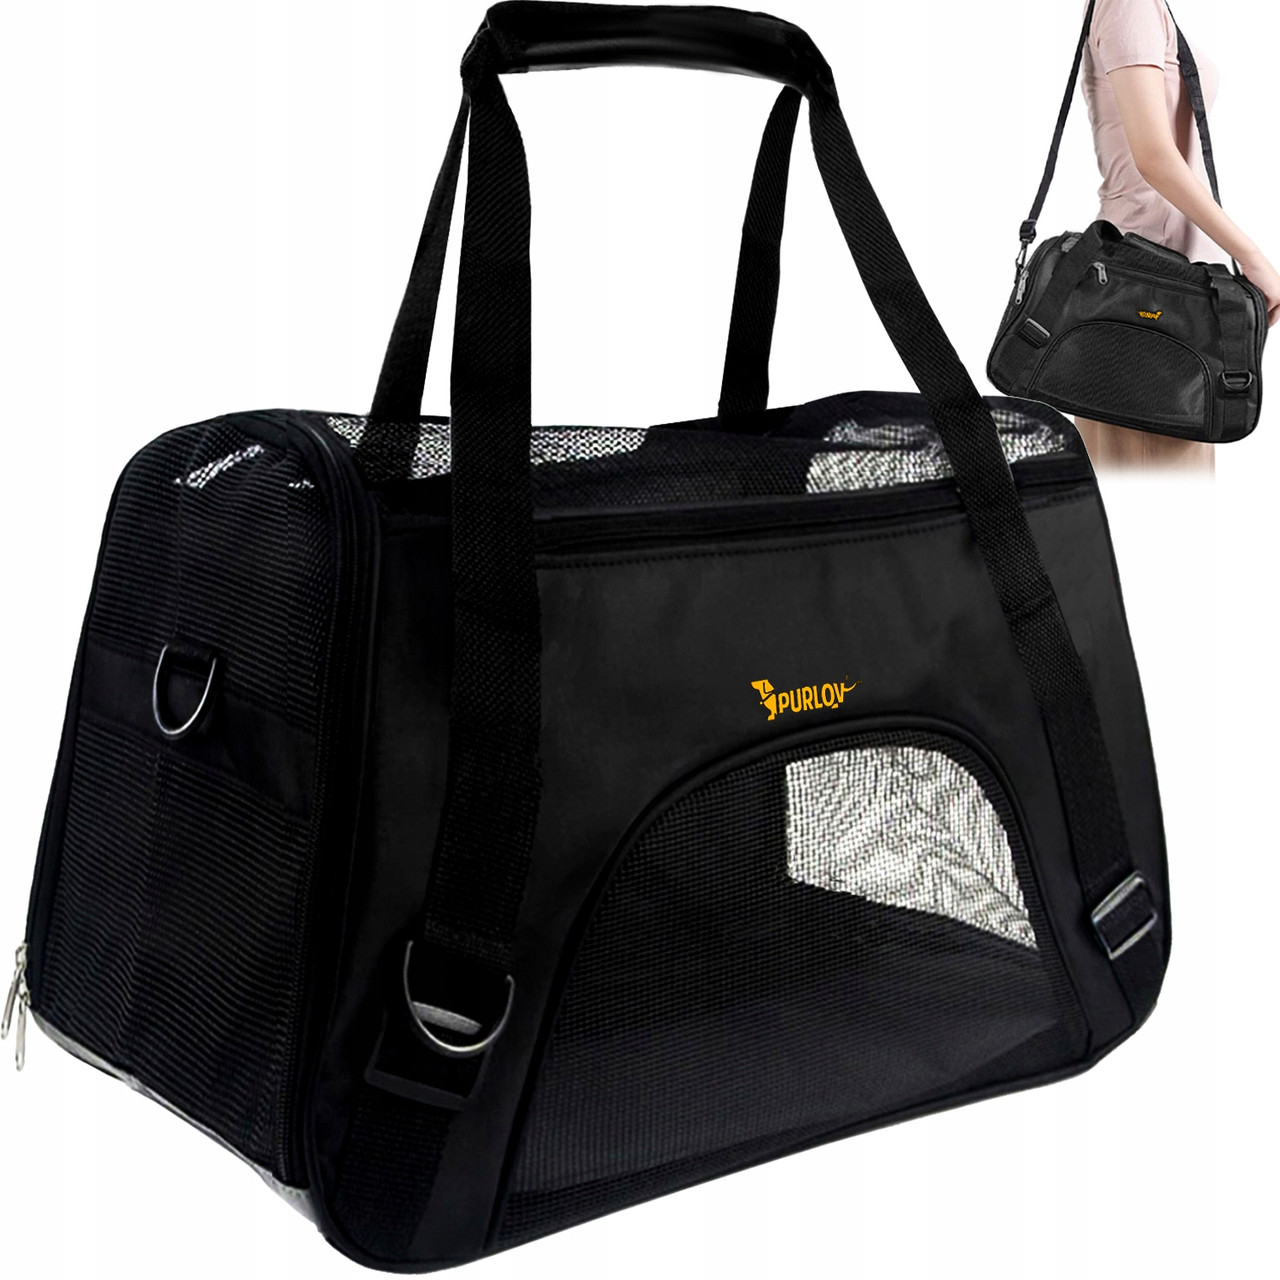 Транспортер сумка з ремінцем для транспортування домашніх тварин до 8 кг Purlov (20940) Black